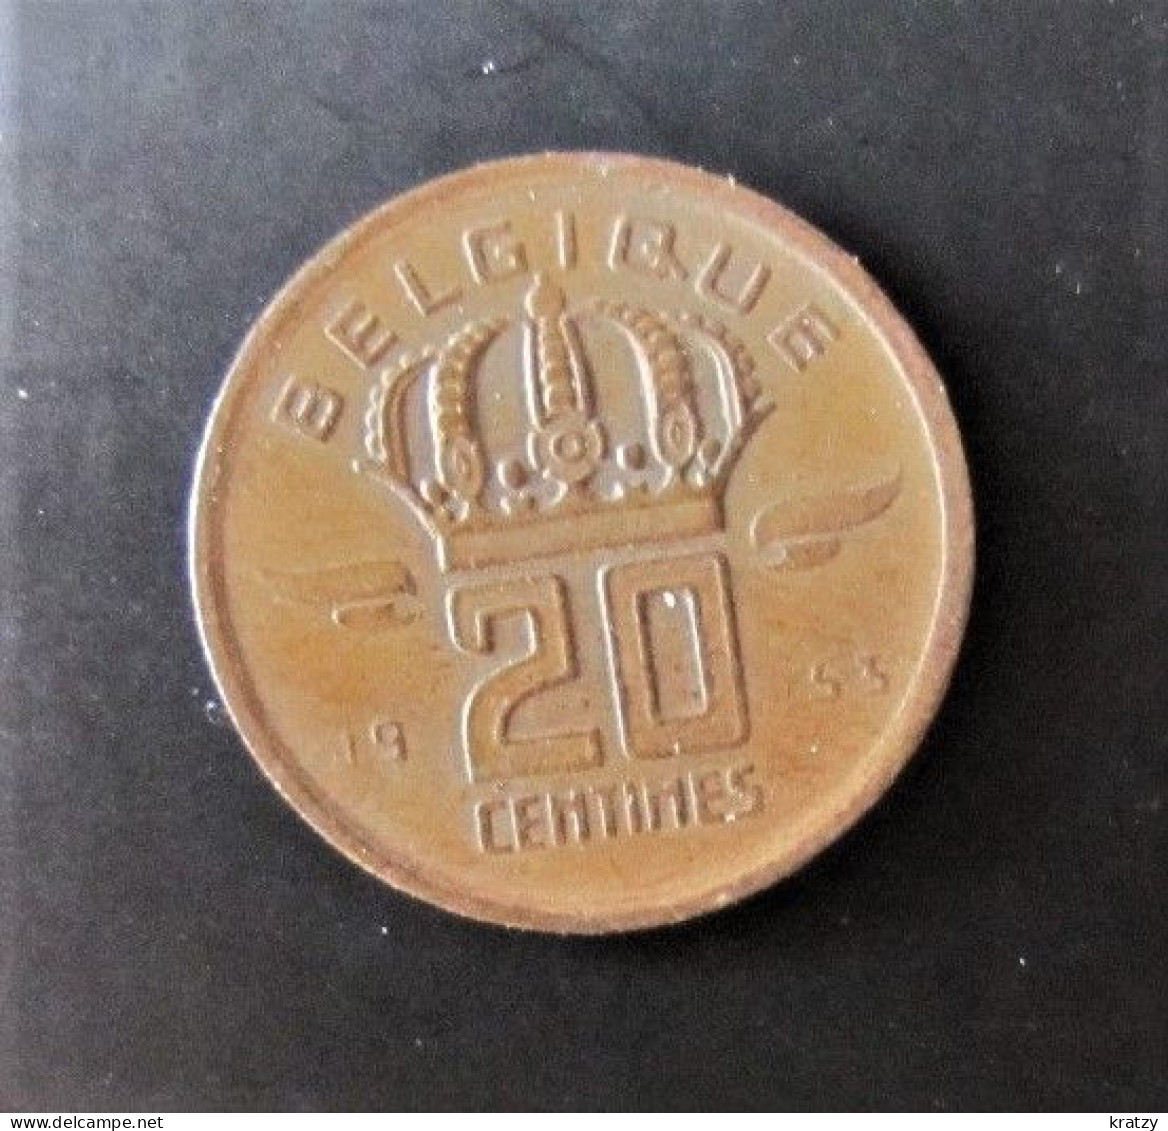 BELGIQUE - Pièce De 20 Centimes - Cuivre - 1954 - 20 Cent